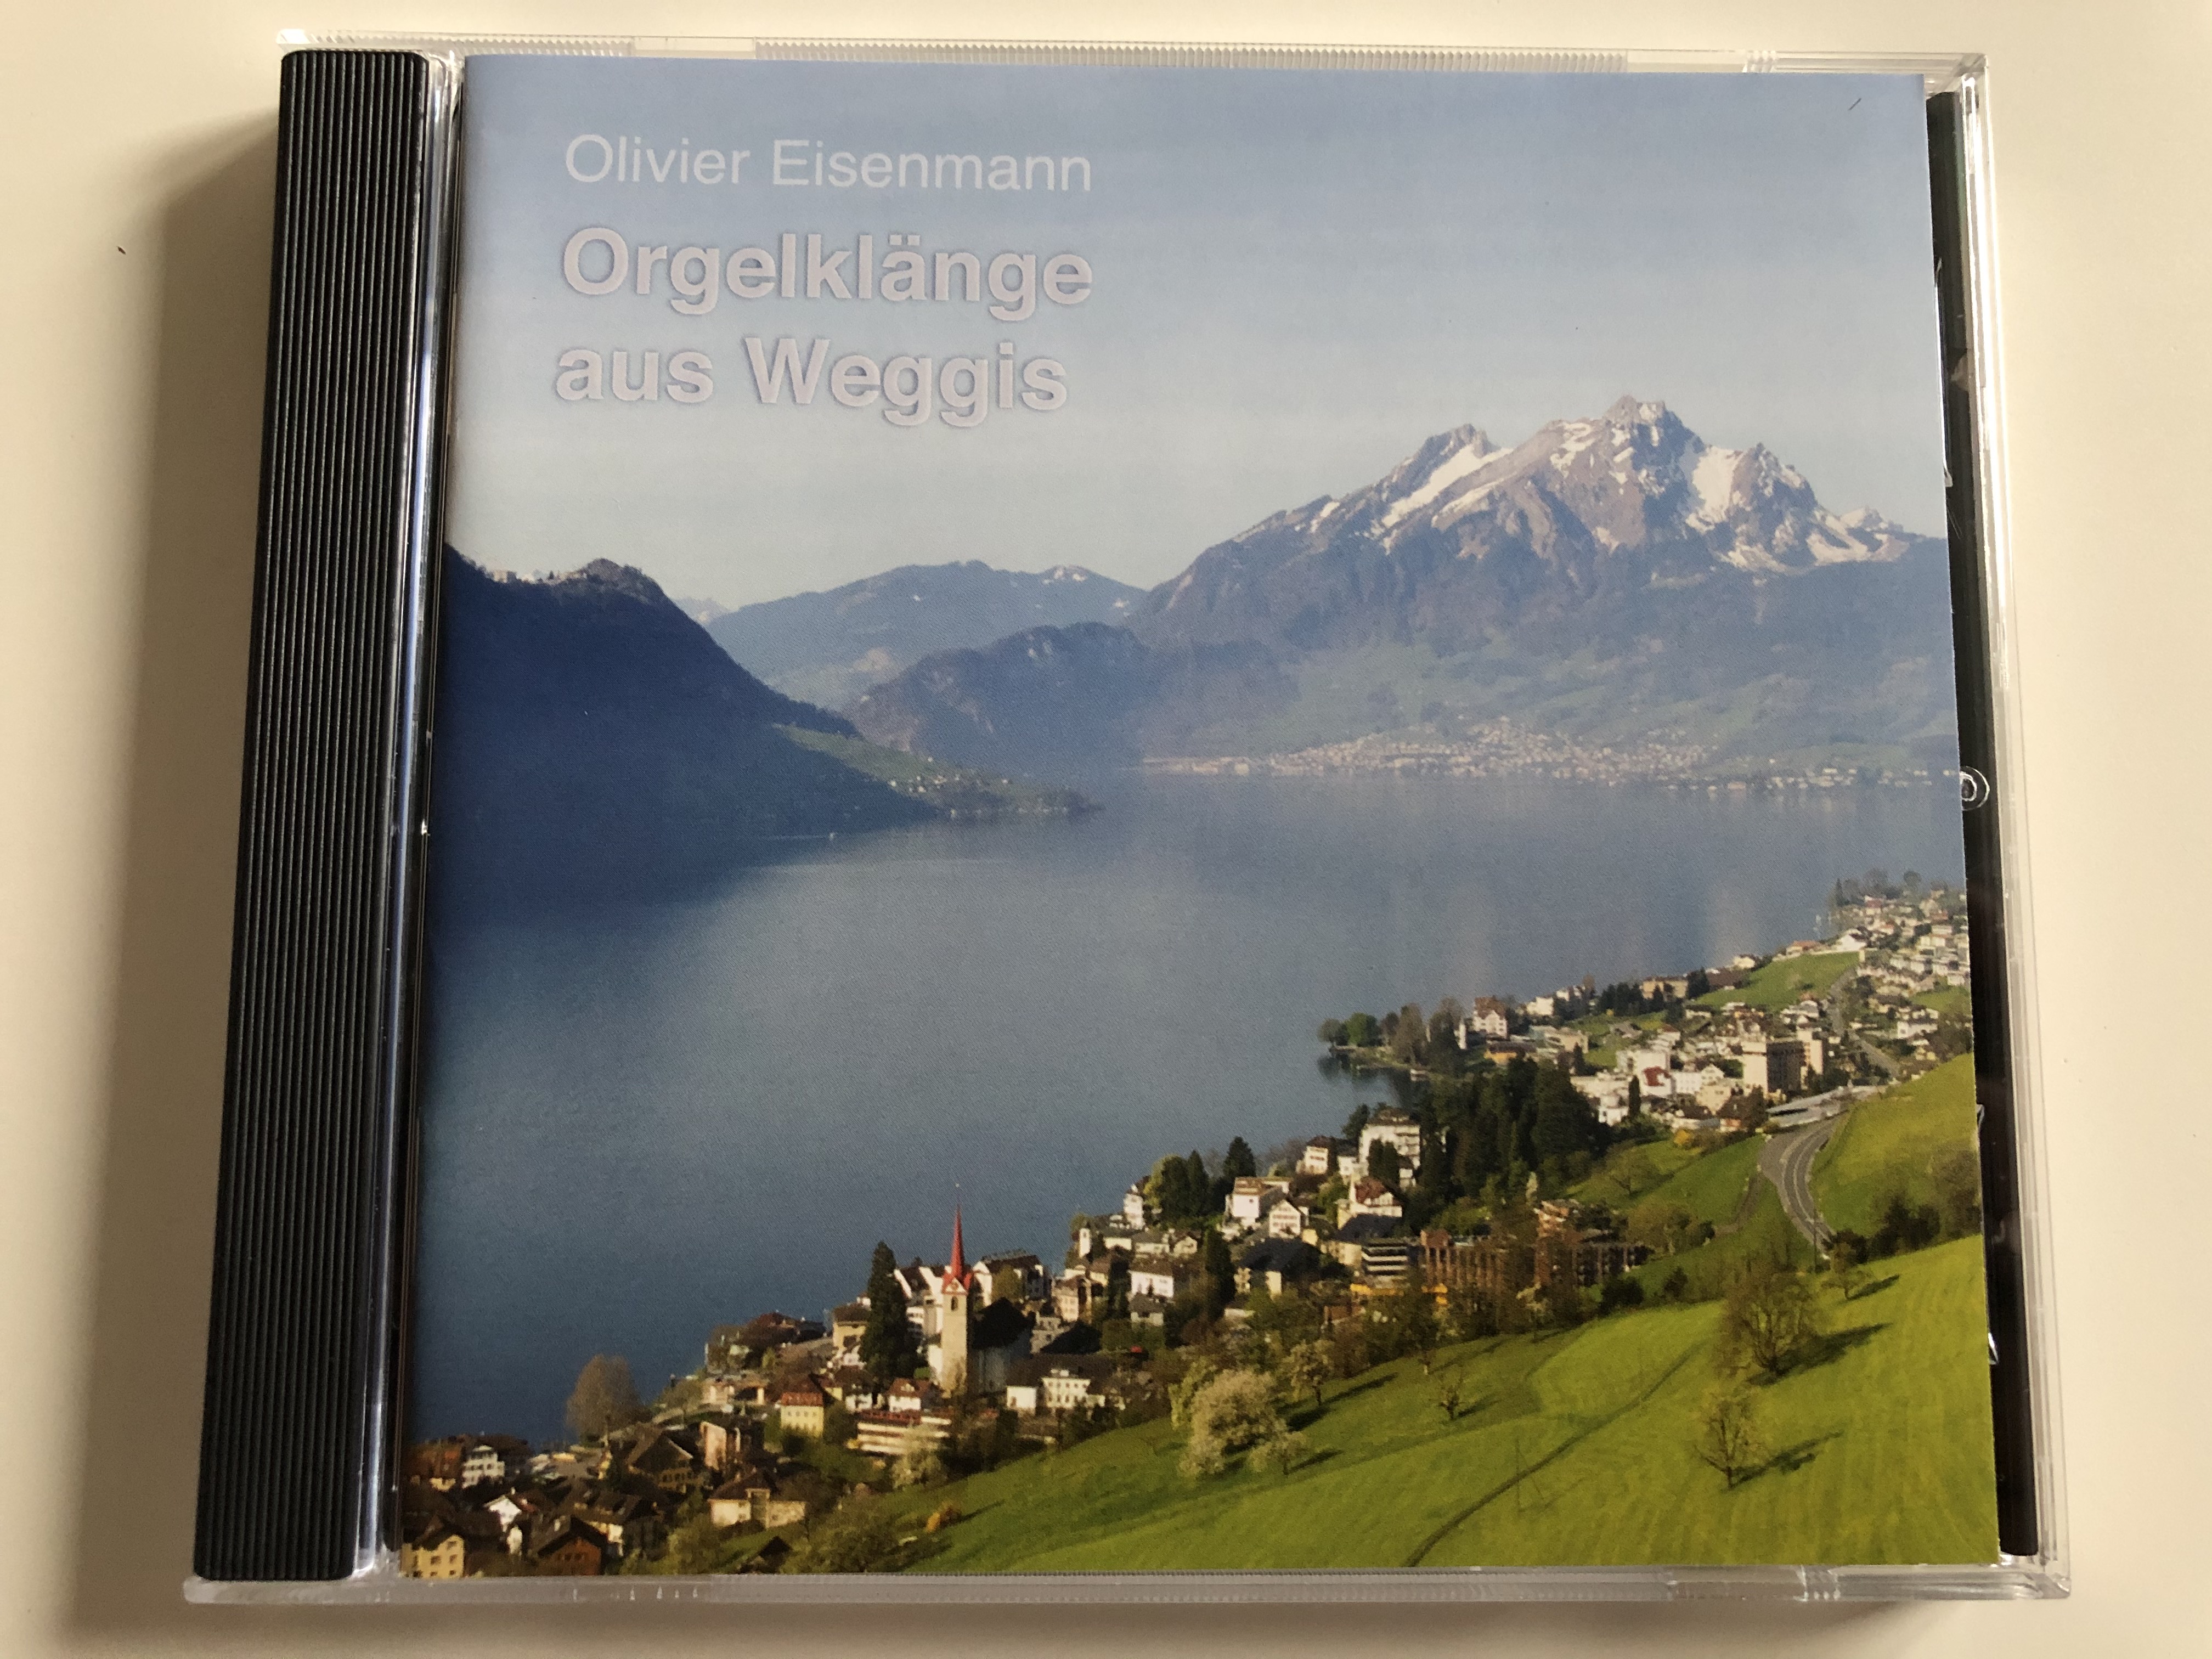 olivier-eisenmann-orgelklange-aus-weggis-edition-violet-audio-cd-2014-200-072-1-.jpg